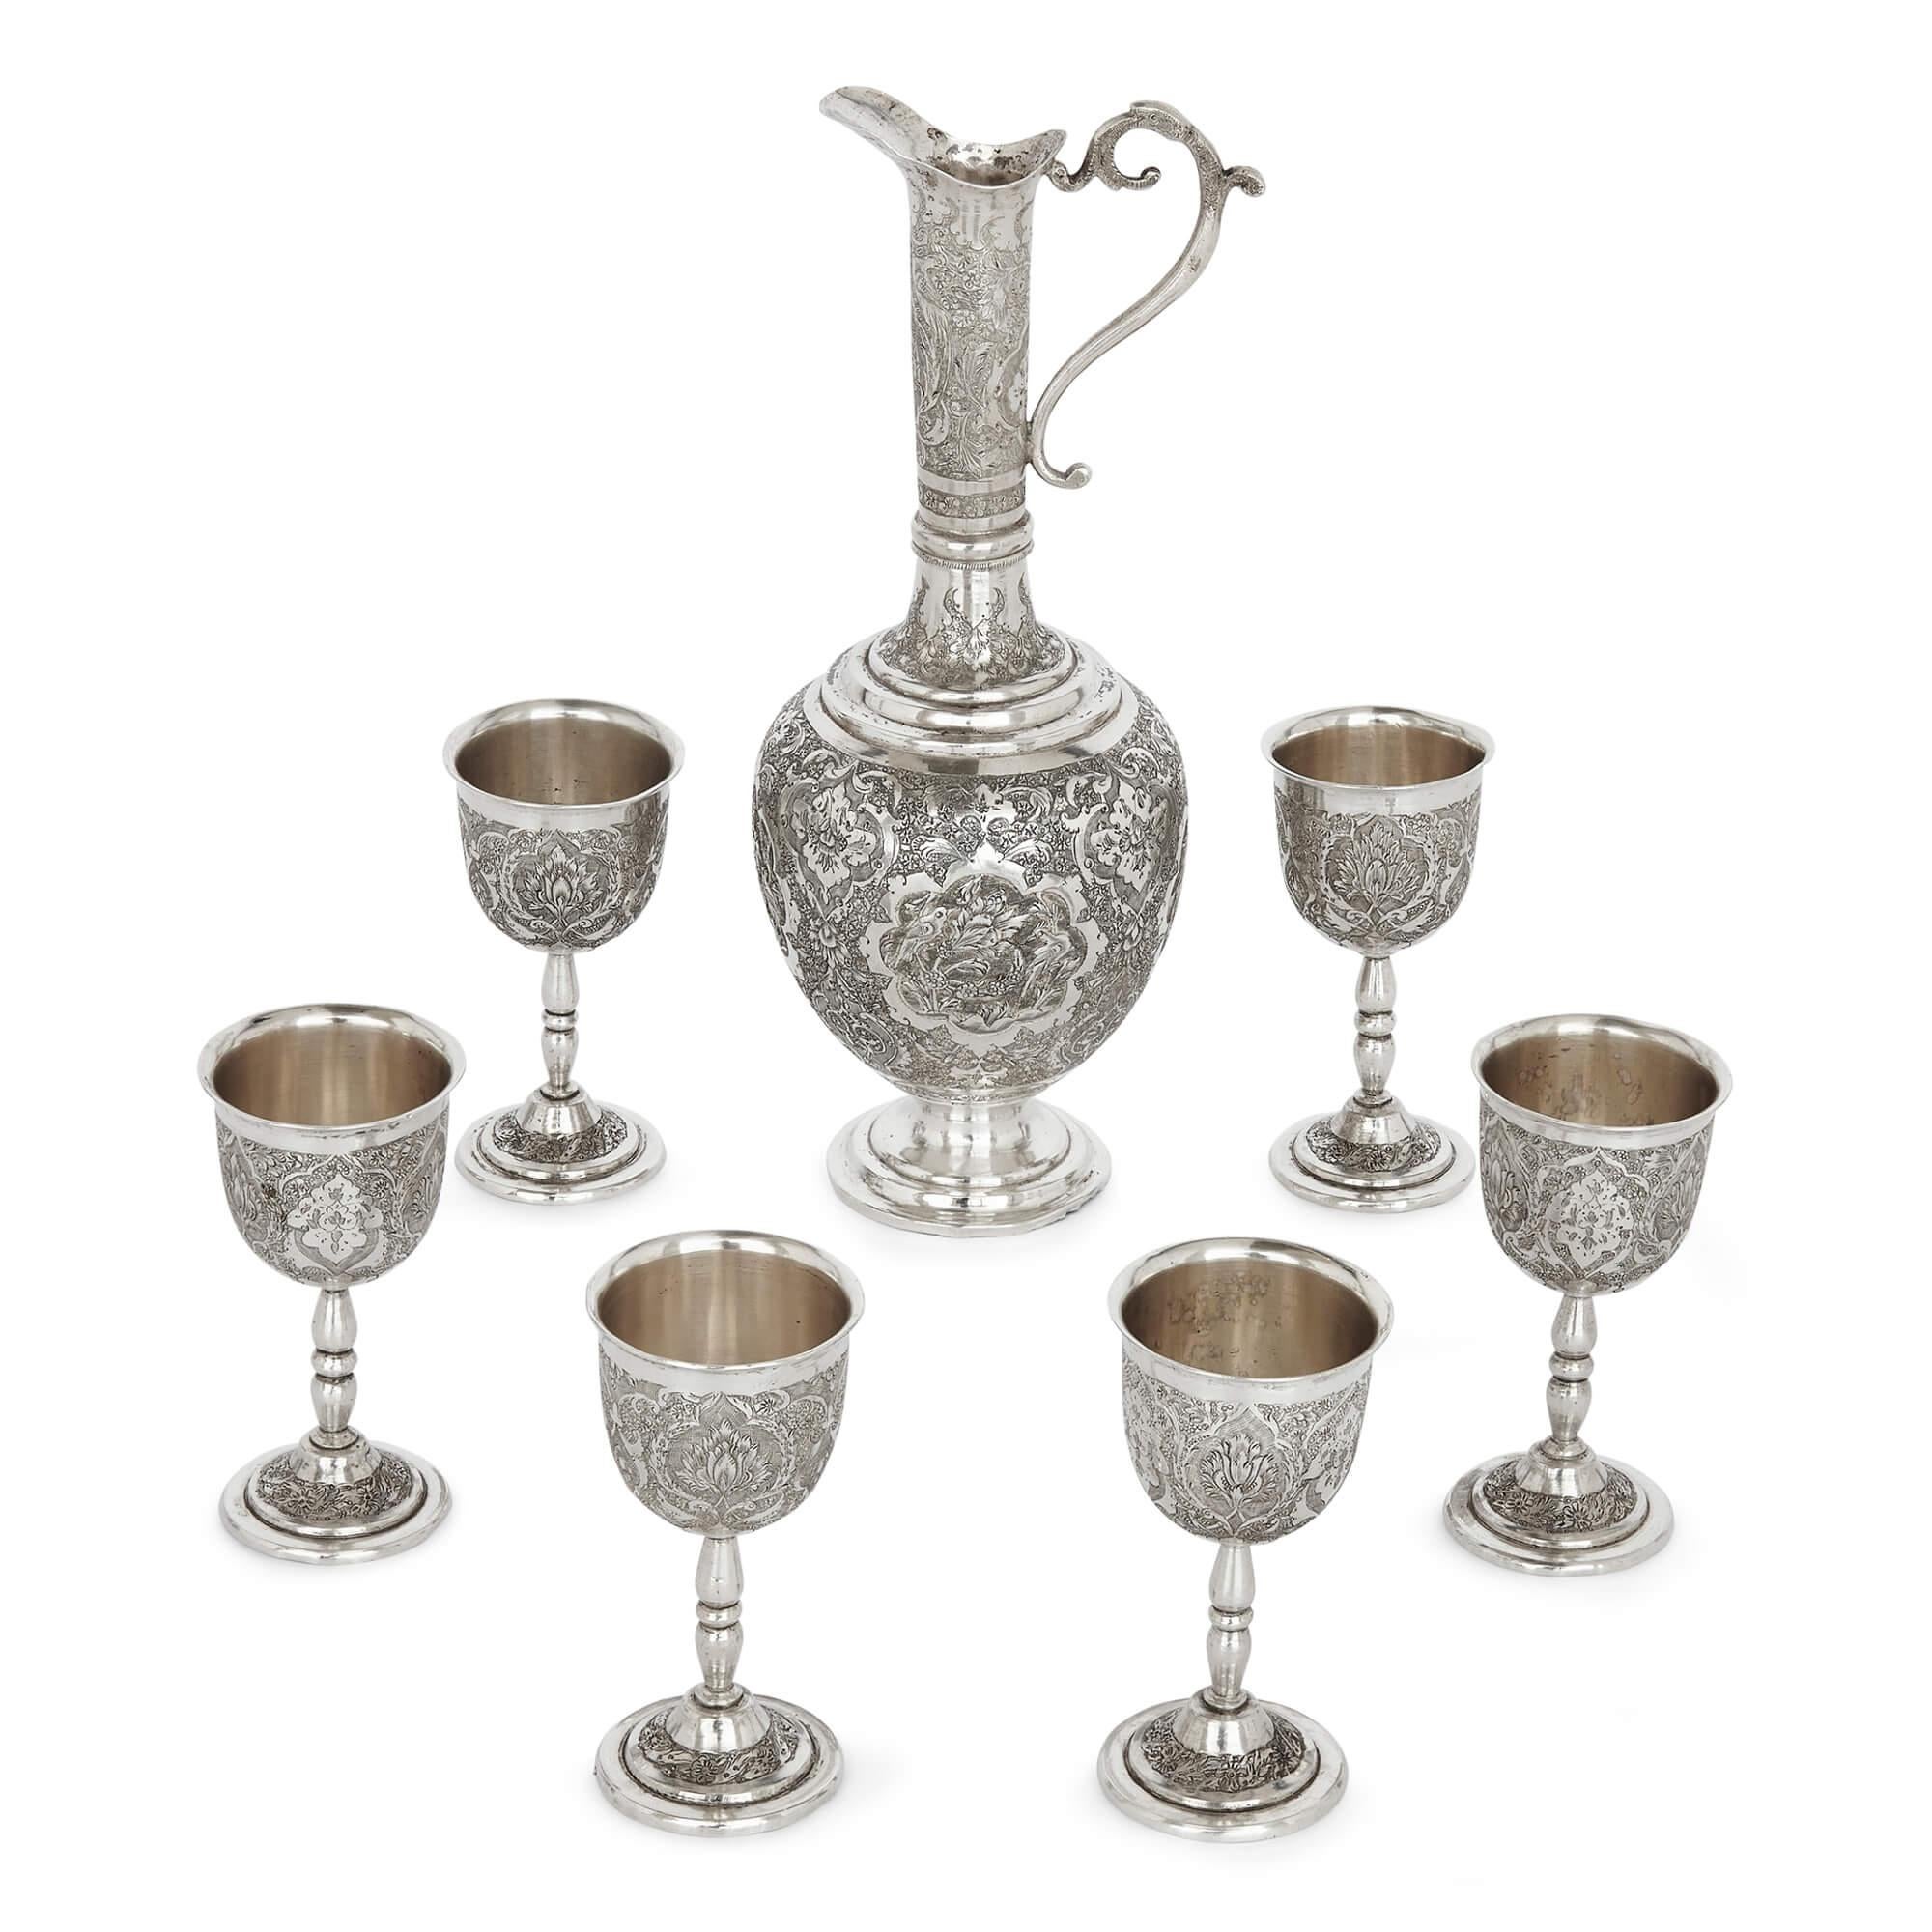 Eine Sammlung von persischem Silber- und Tafelgeschirr
Persisch, Anfang 20. Jahrhundert
Box: Höhe 3cm, Breite 16,5cm, Tiefe 9,5cm
Vasen: Höhe 41cm, Durchmesser 12cm

Diese exzellente Silbersammlung ist ein Beispiel für hervorragende persische